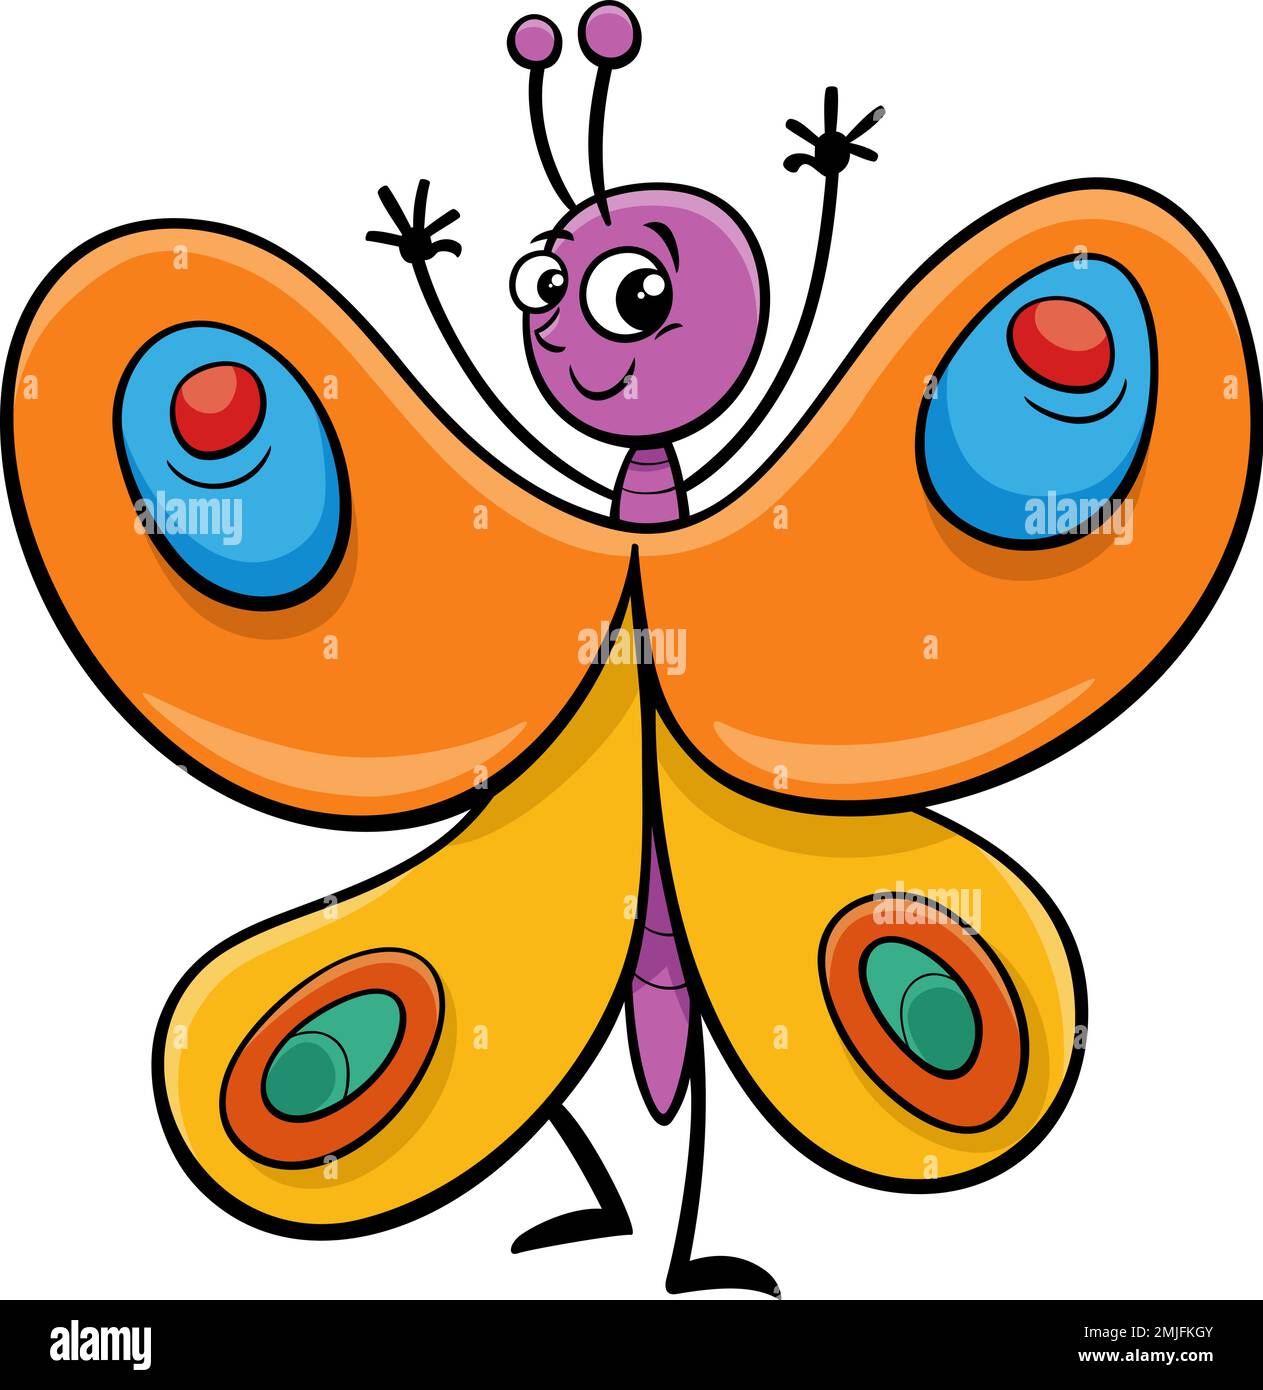 Cartoon butterflies vector seamless pattern. Cute animal character